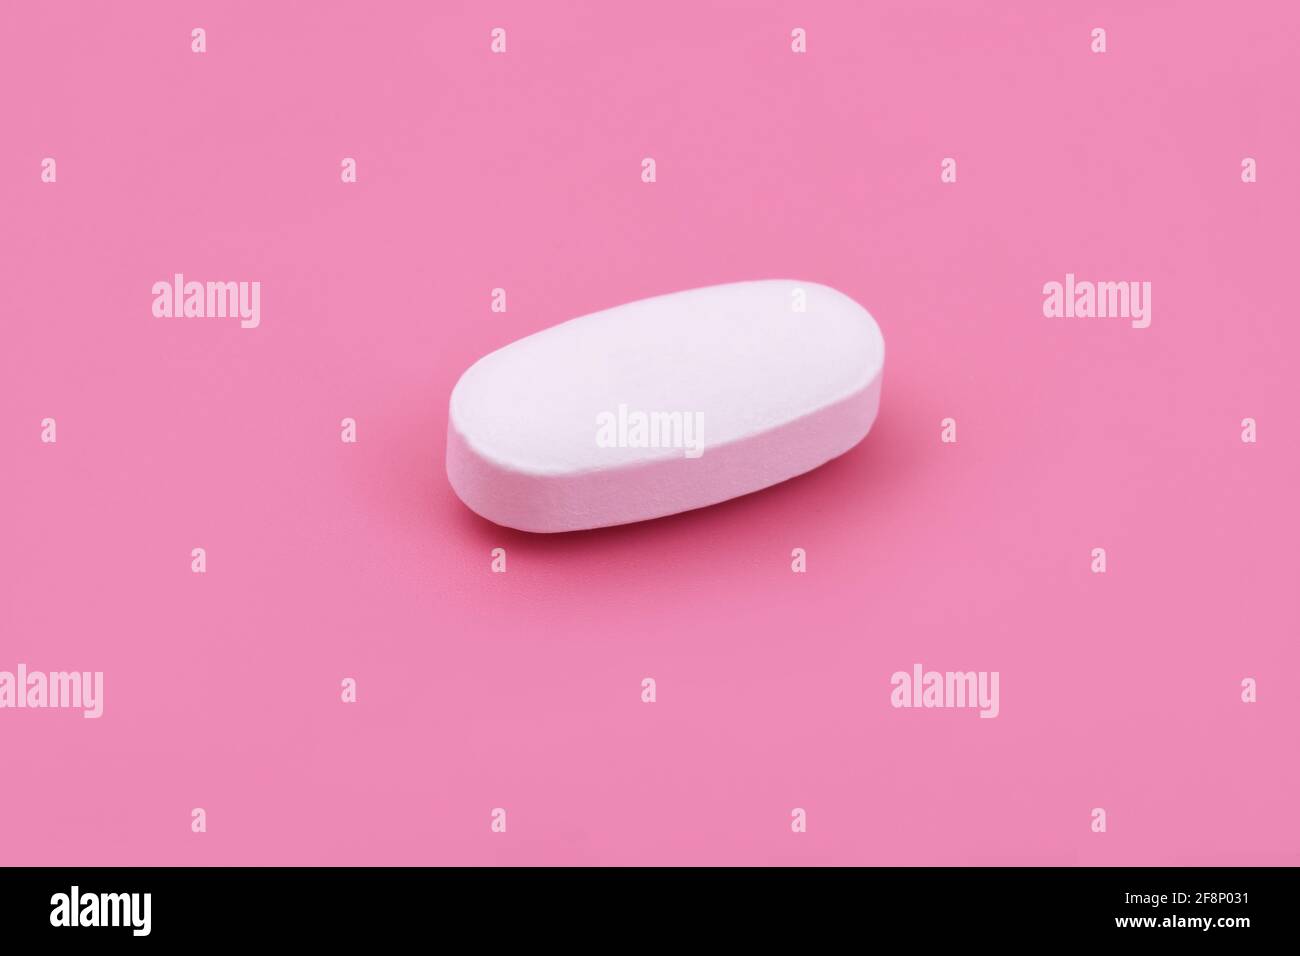 Weiß Pharmazeutische Medizin Tablette auf rosa Hintergrund, Draufsicht Flat Lay Copy space Medizin Konzepte Baby rosa Farbe Hintergrund Stockfoto